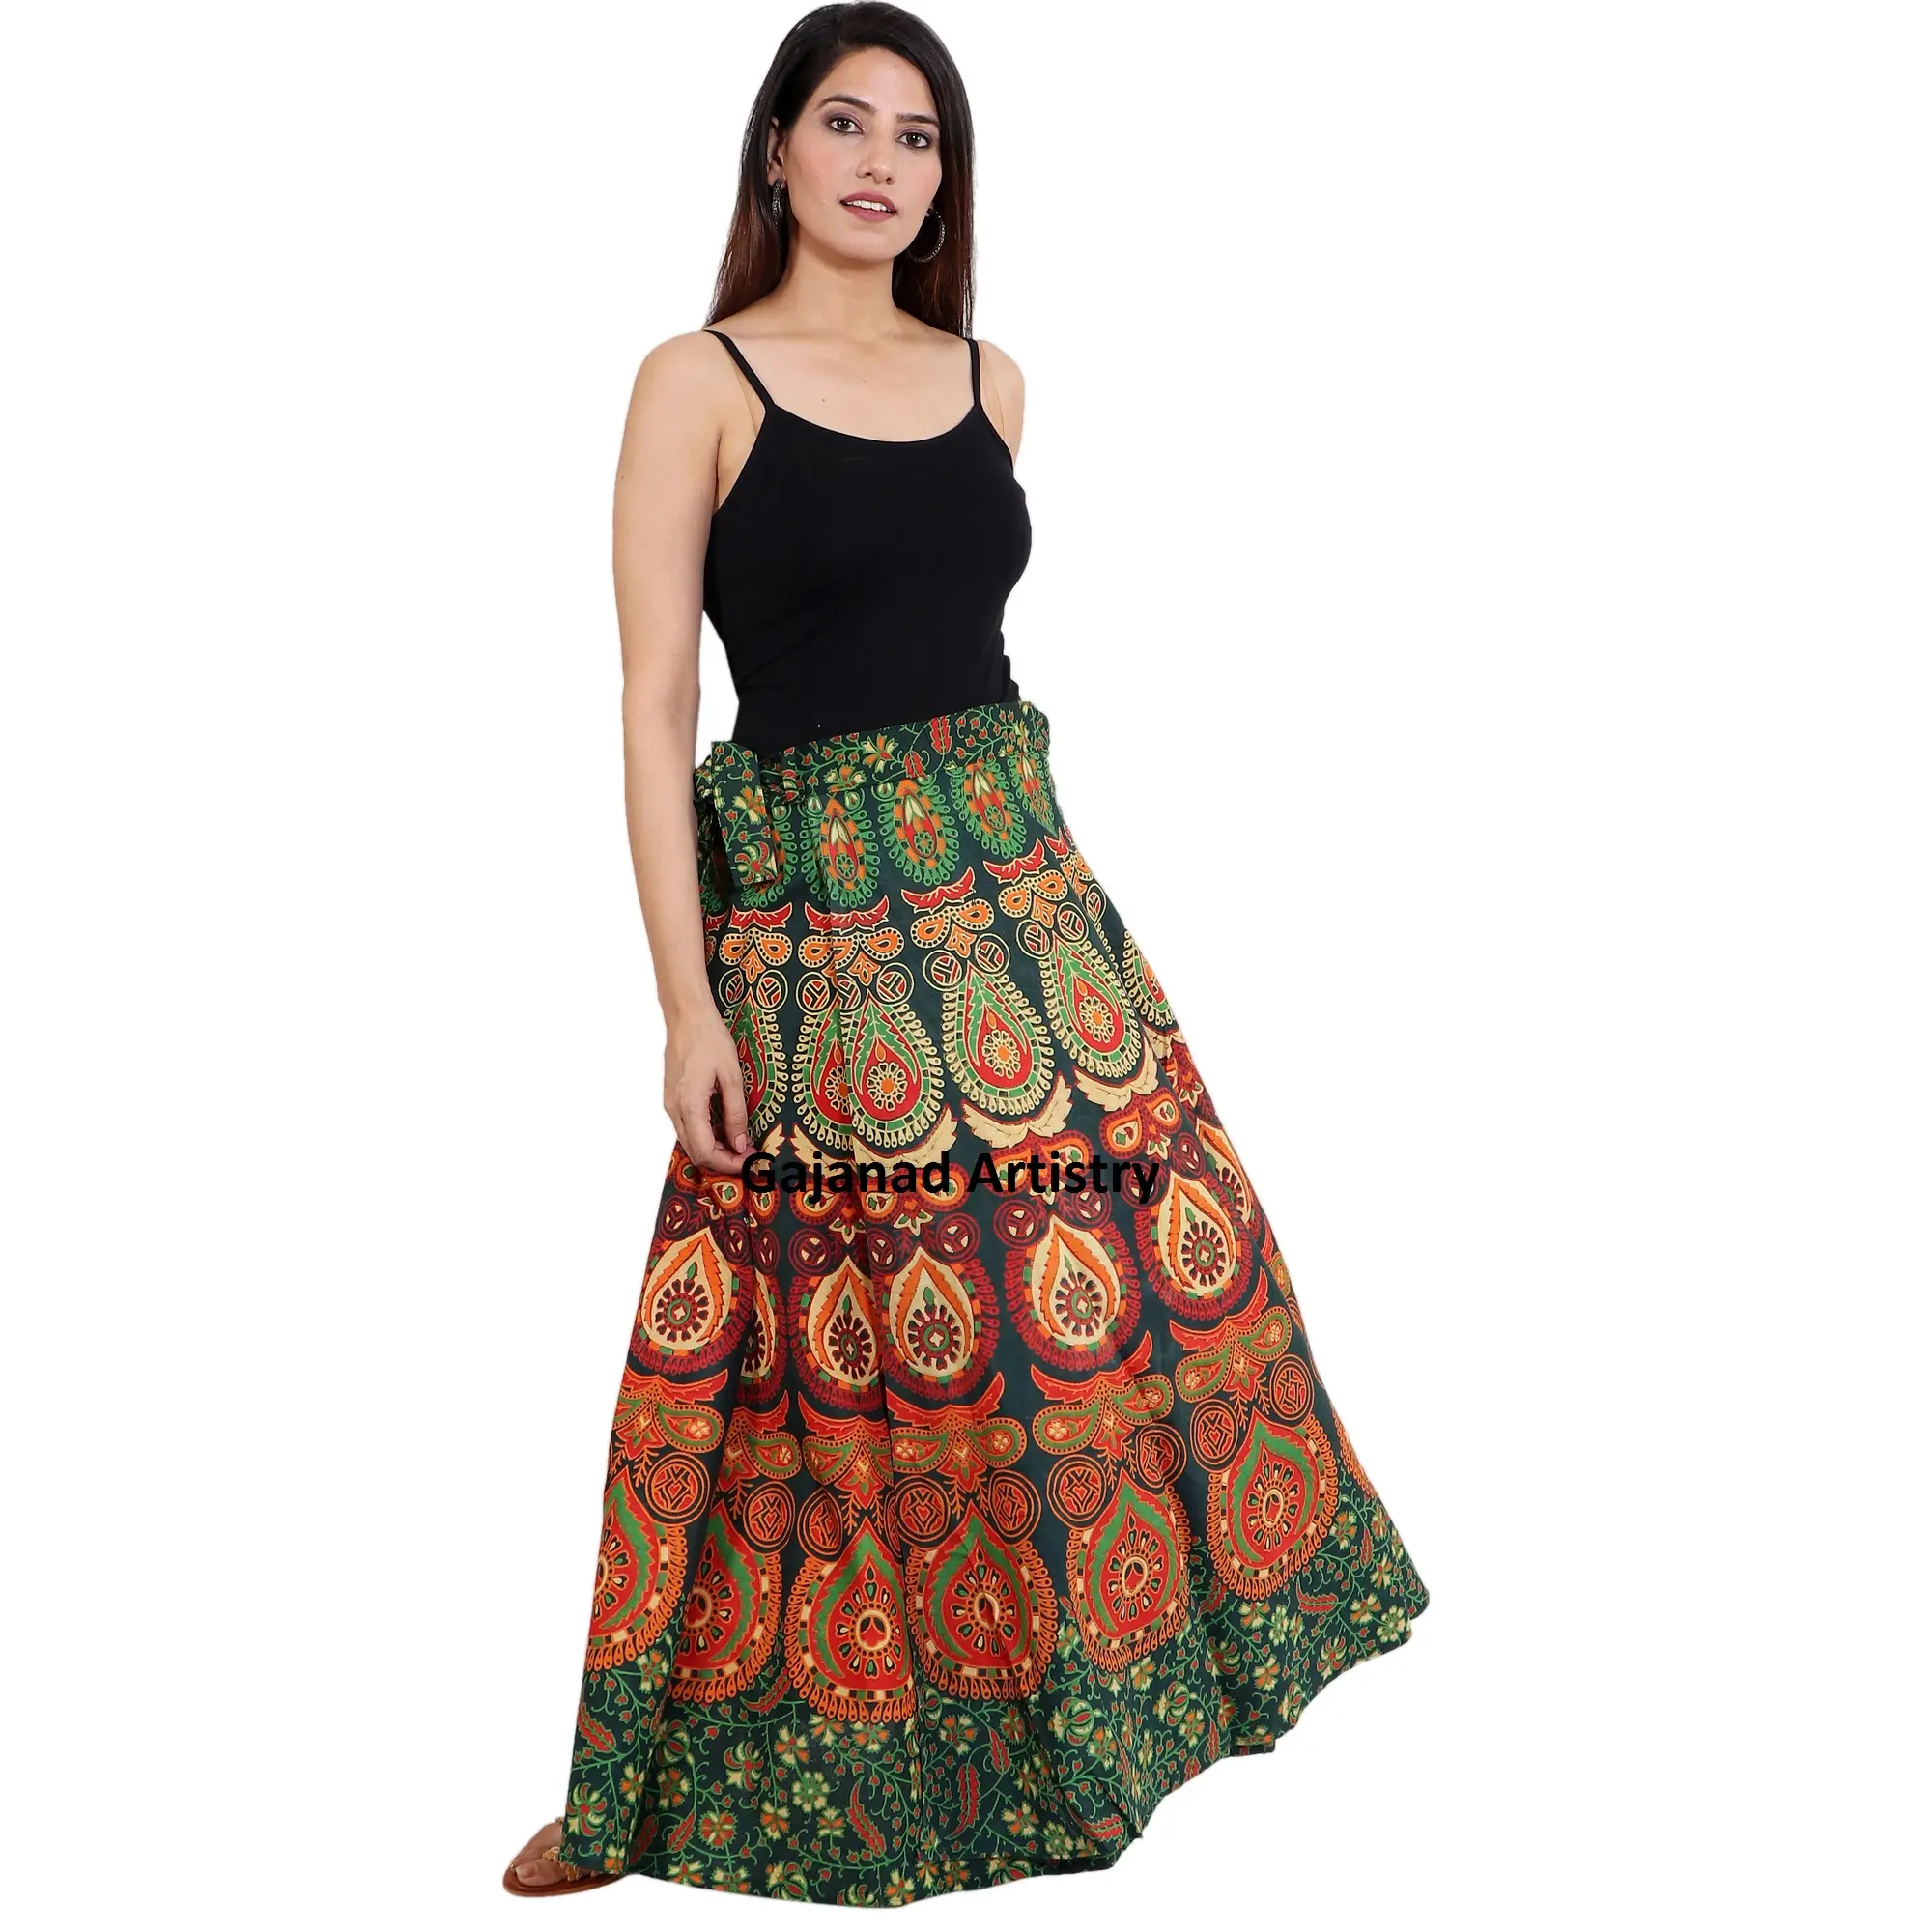 Chân Váy Dài Phong Cách Boho Ấn Độ Cho Bé Gái Và Phụ Nữ Chân Váy Gypsy Boho